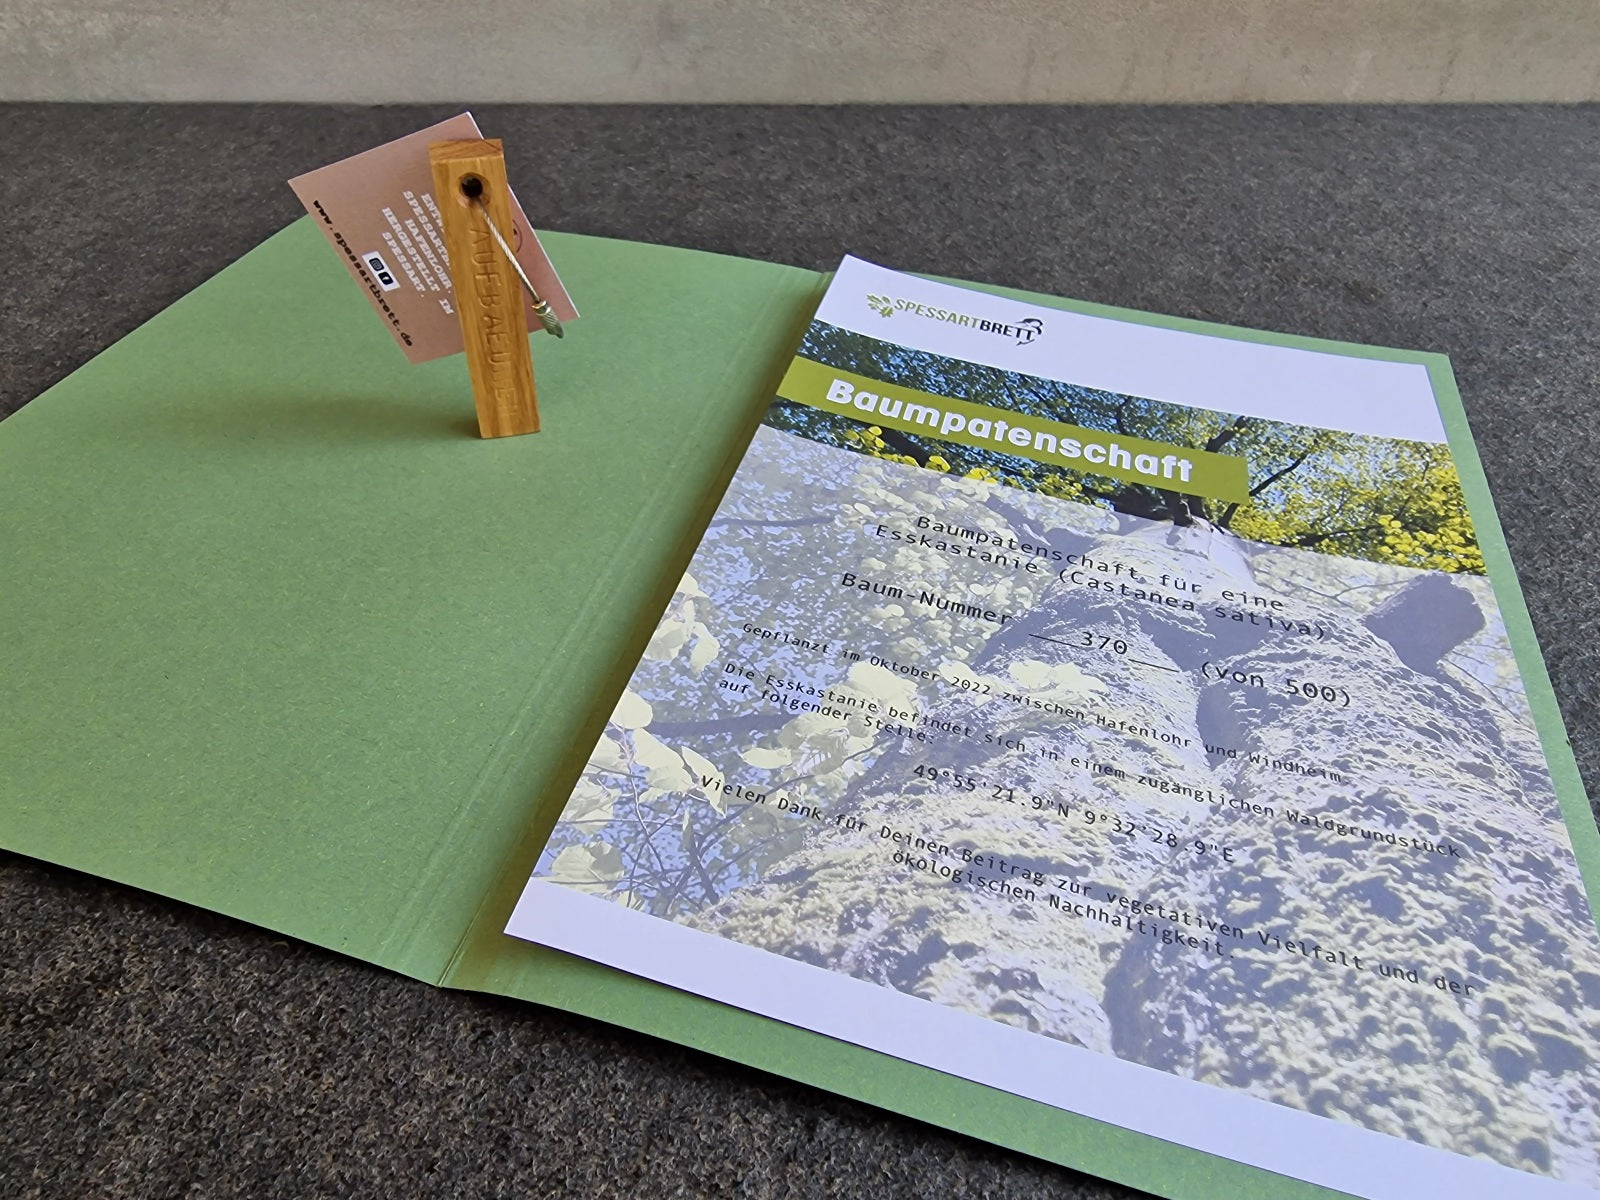 Baumpatenschaft Urkunden in einer Mappe. Mit einem Eiche Schlüsselanhänger mit Drahtseil. 